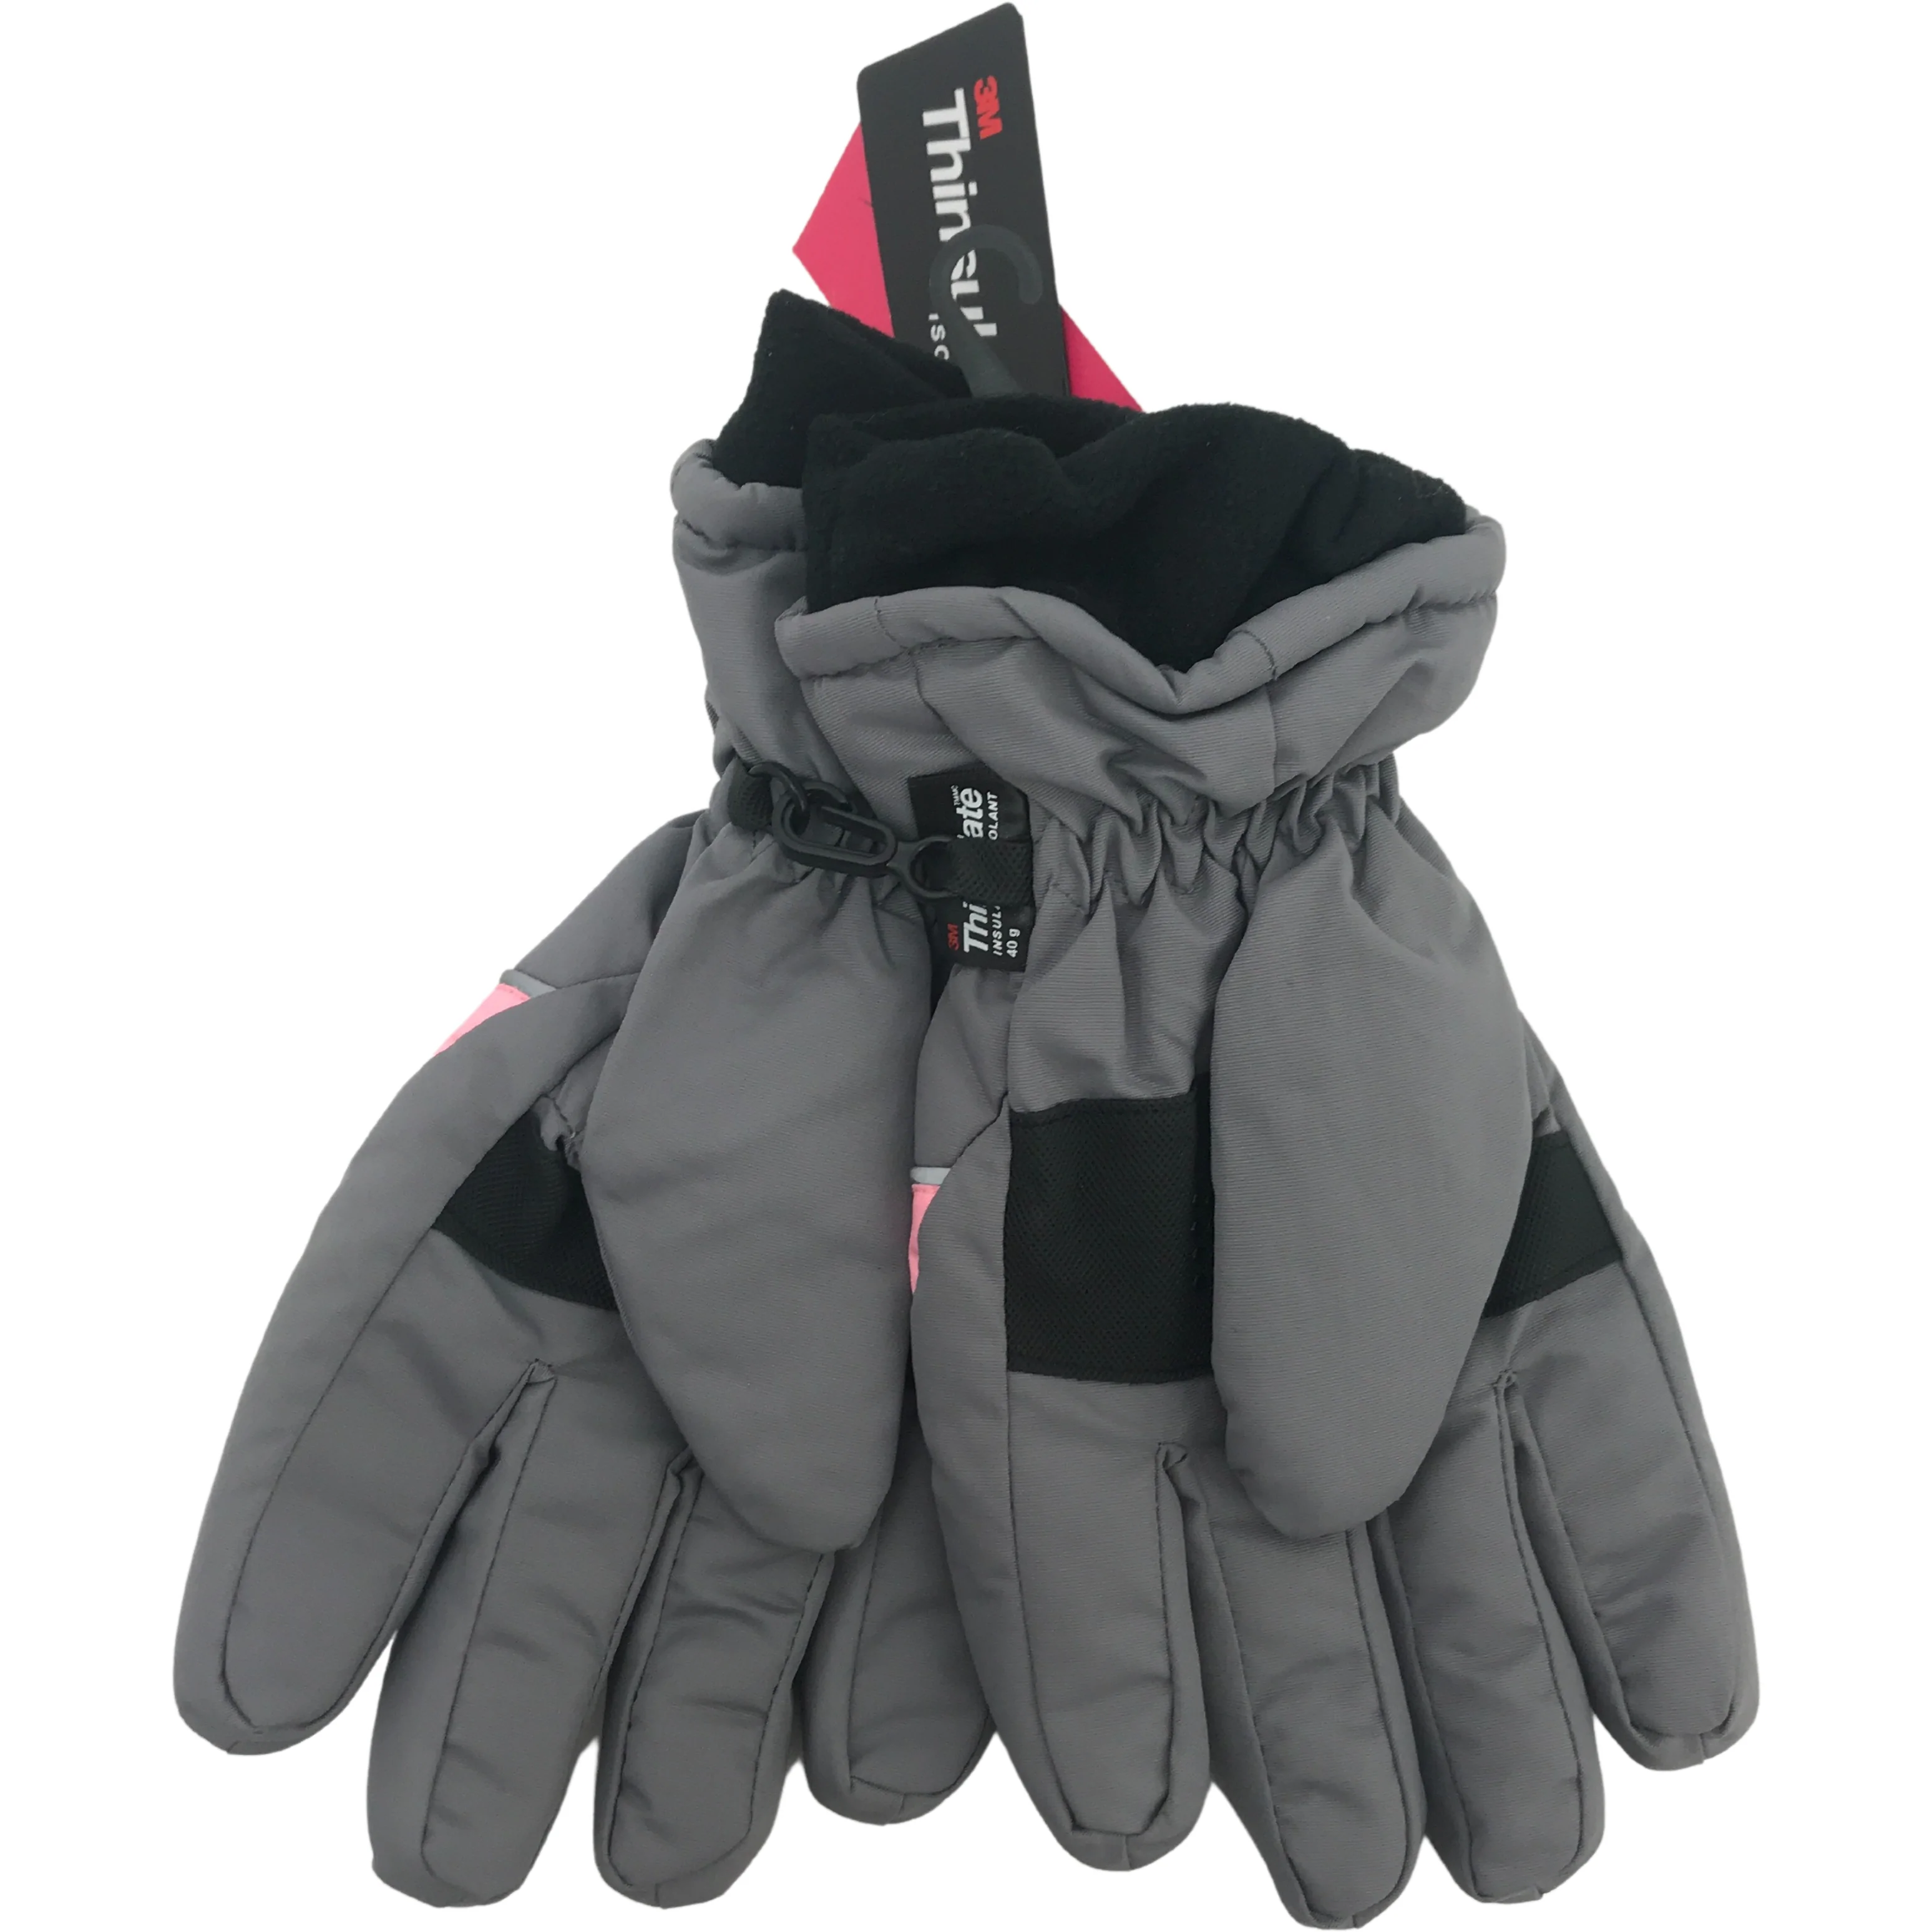 Minus Zero Children's Winter Gloves / Girl's Gloves / Grey with Pink / Size 7-16